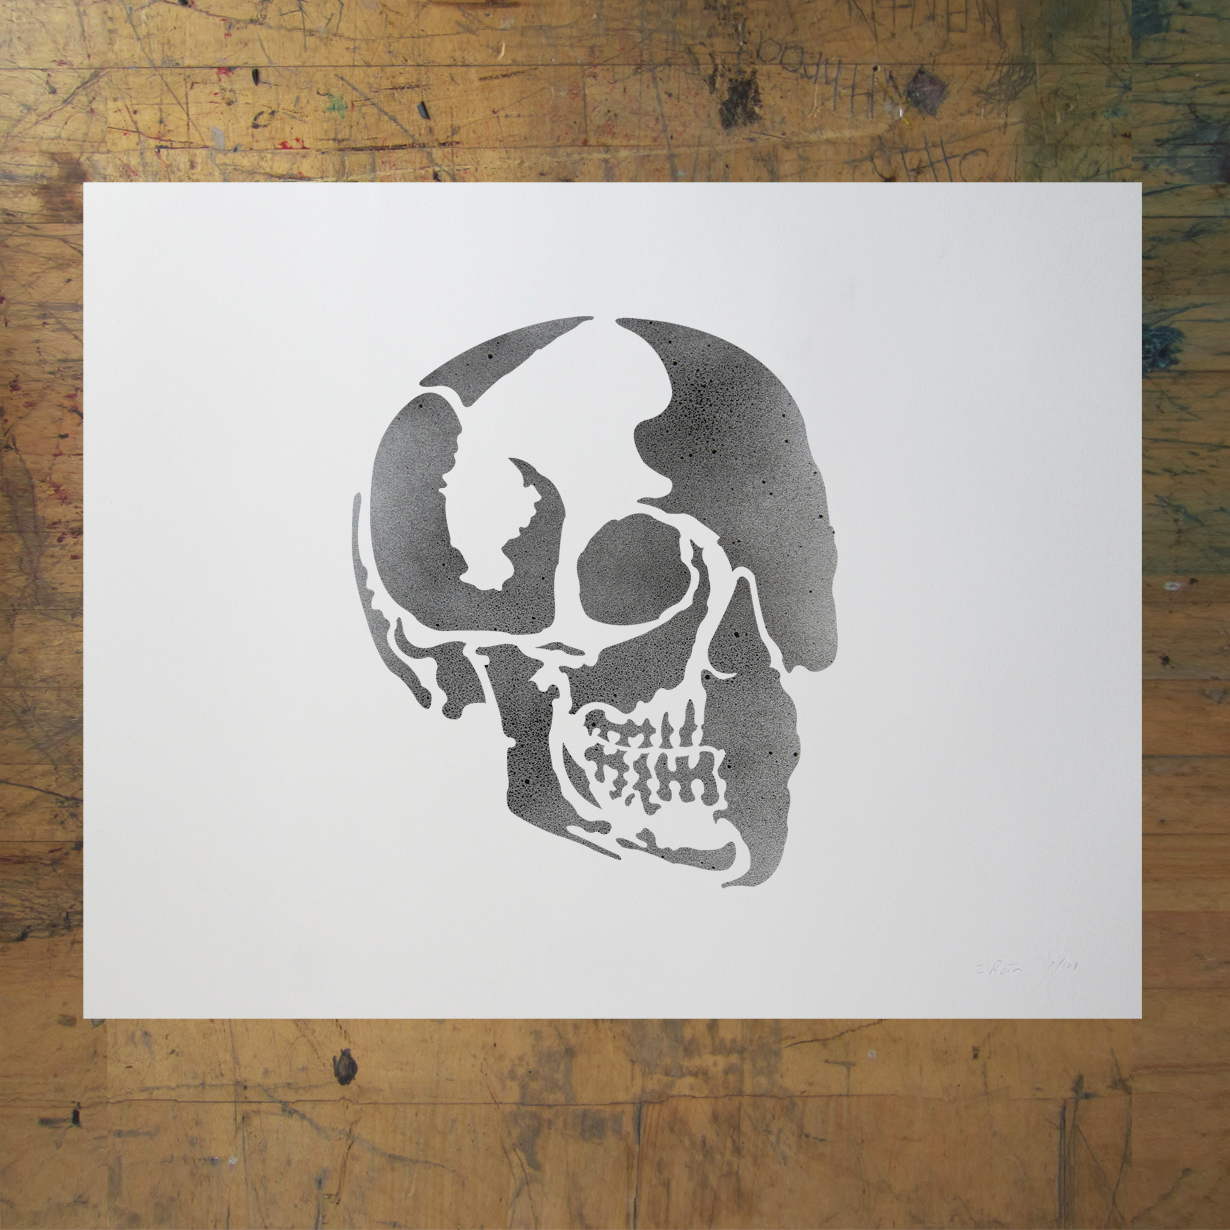 cool skull stencils